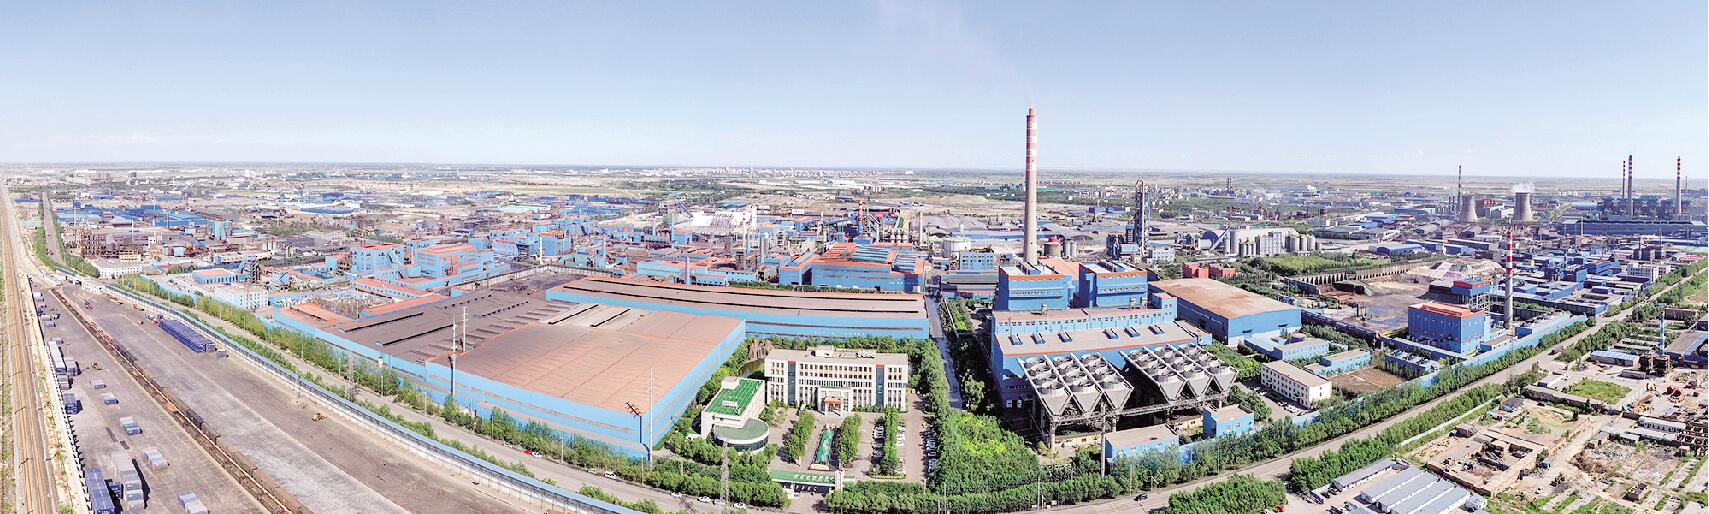 宁夏晟晏实业集团目前已经发展成为国内最大的硅锰合金生产企业 赖胜龙 摄.jpg